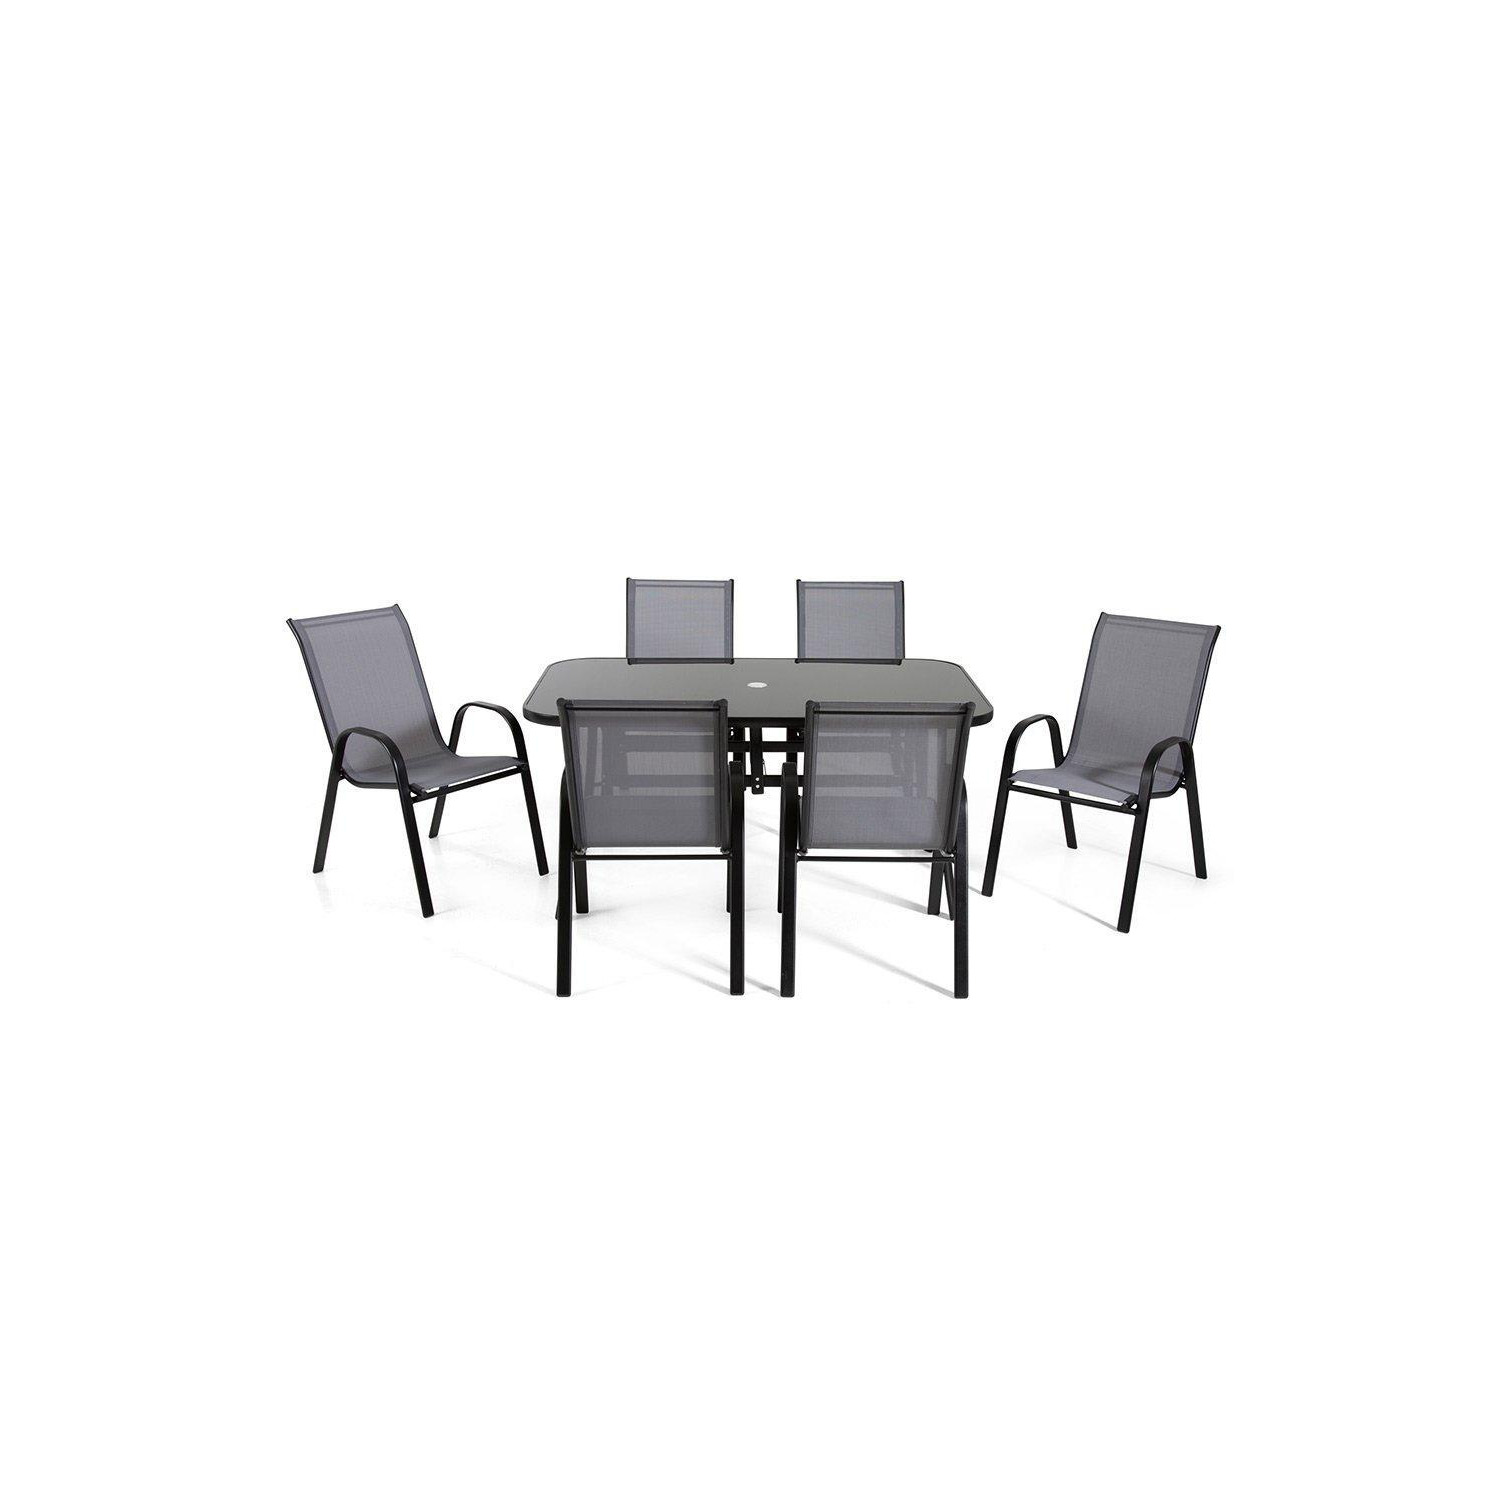 The Rufford - Black & Grey Metal 6 Seat Garden Dining Set - image 1